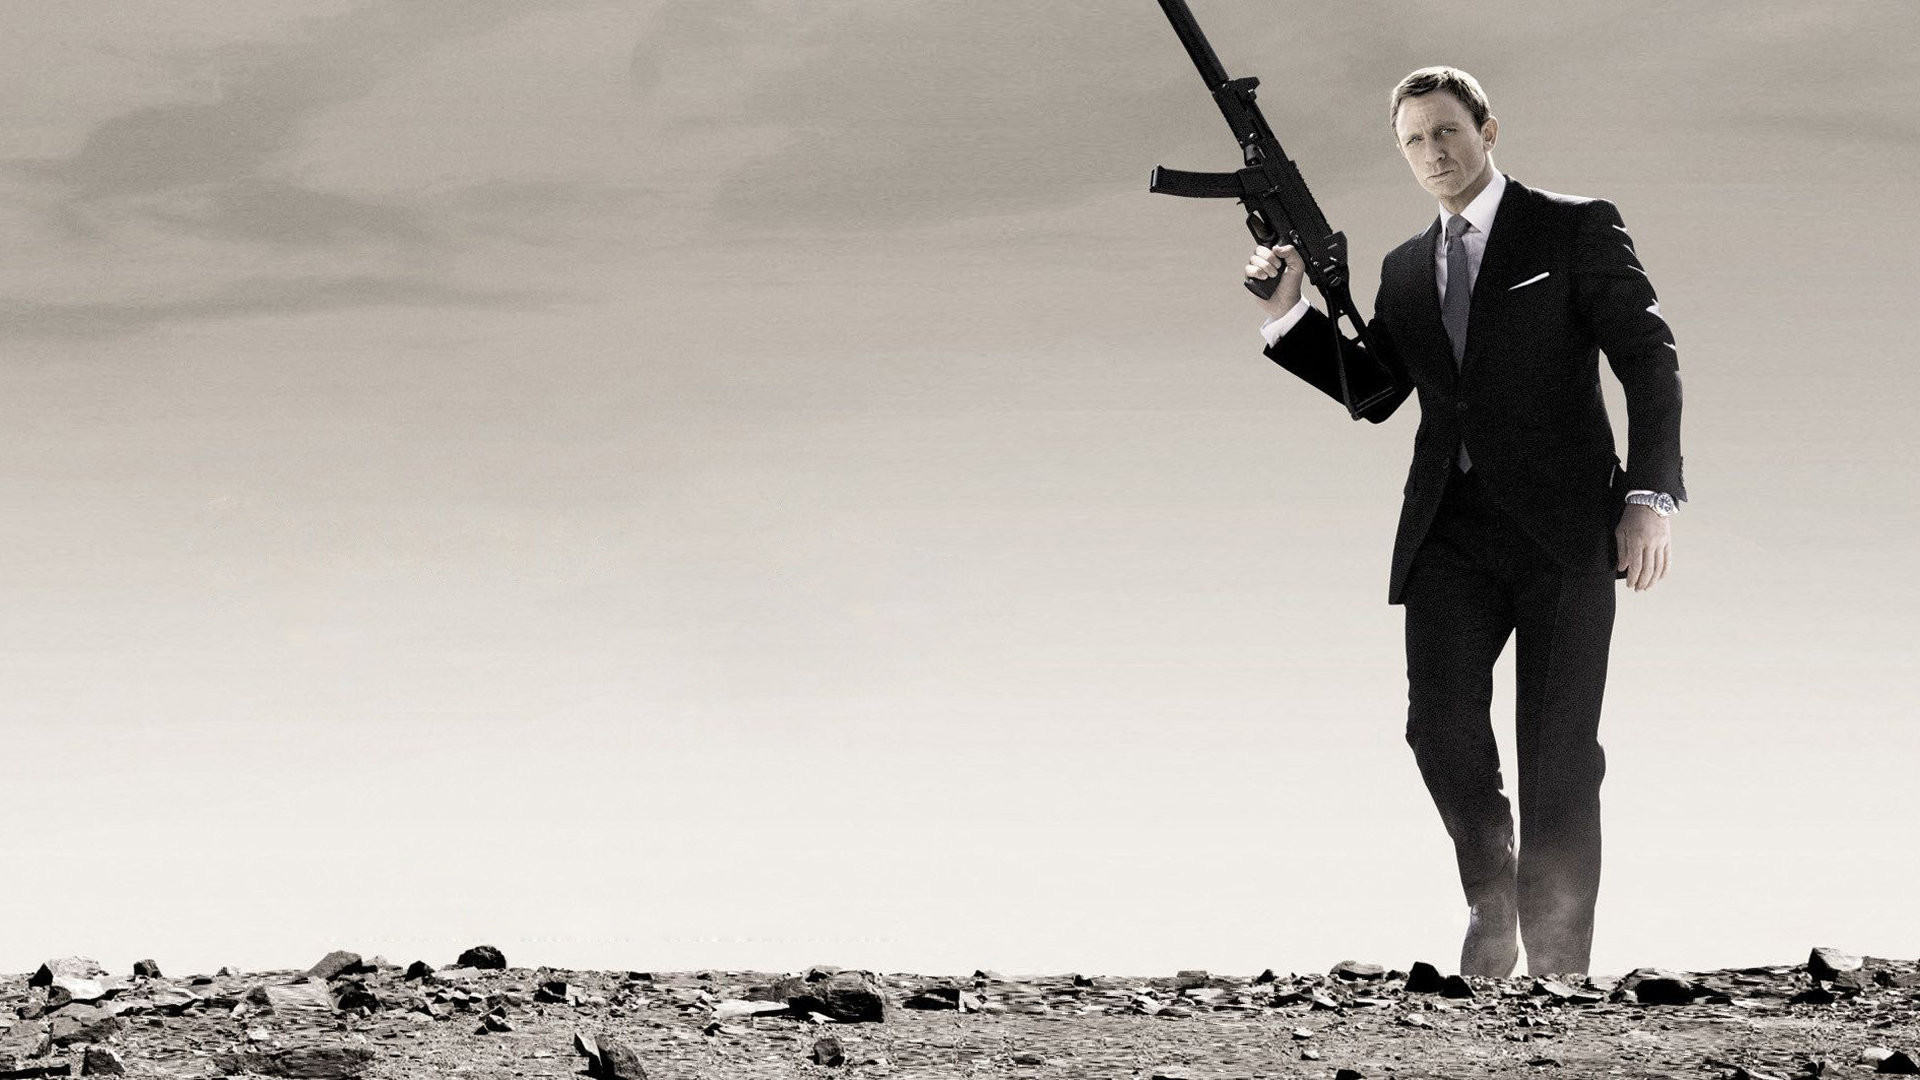 sfondo di james bond 007,in piedi,completo da uomo,sport di tiro a segno,tiro,vestito formale